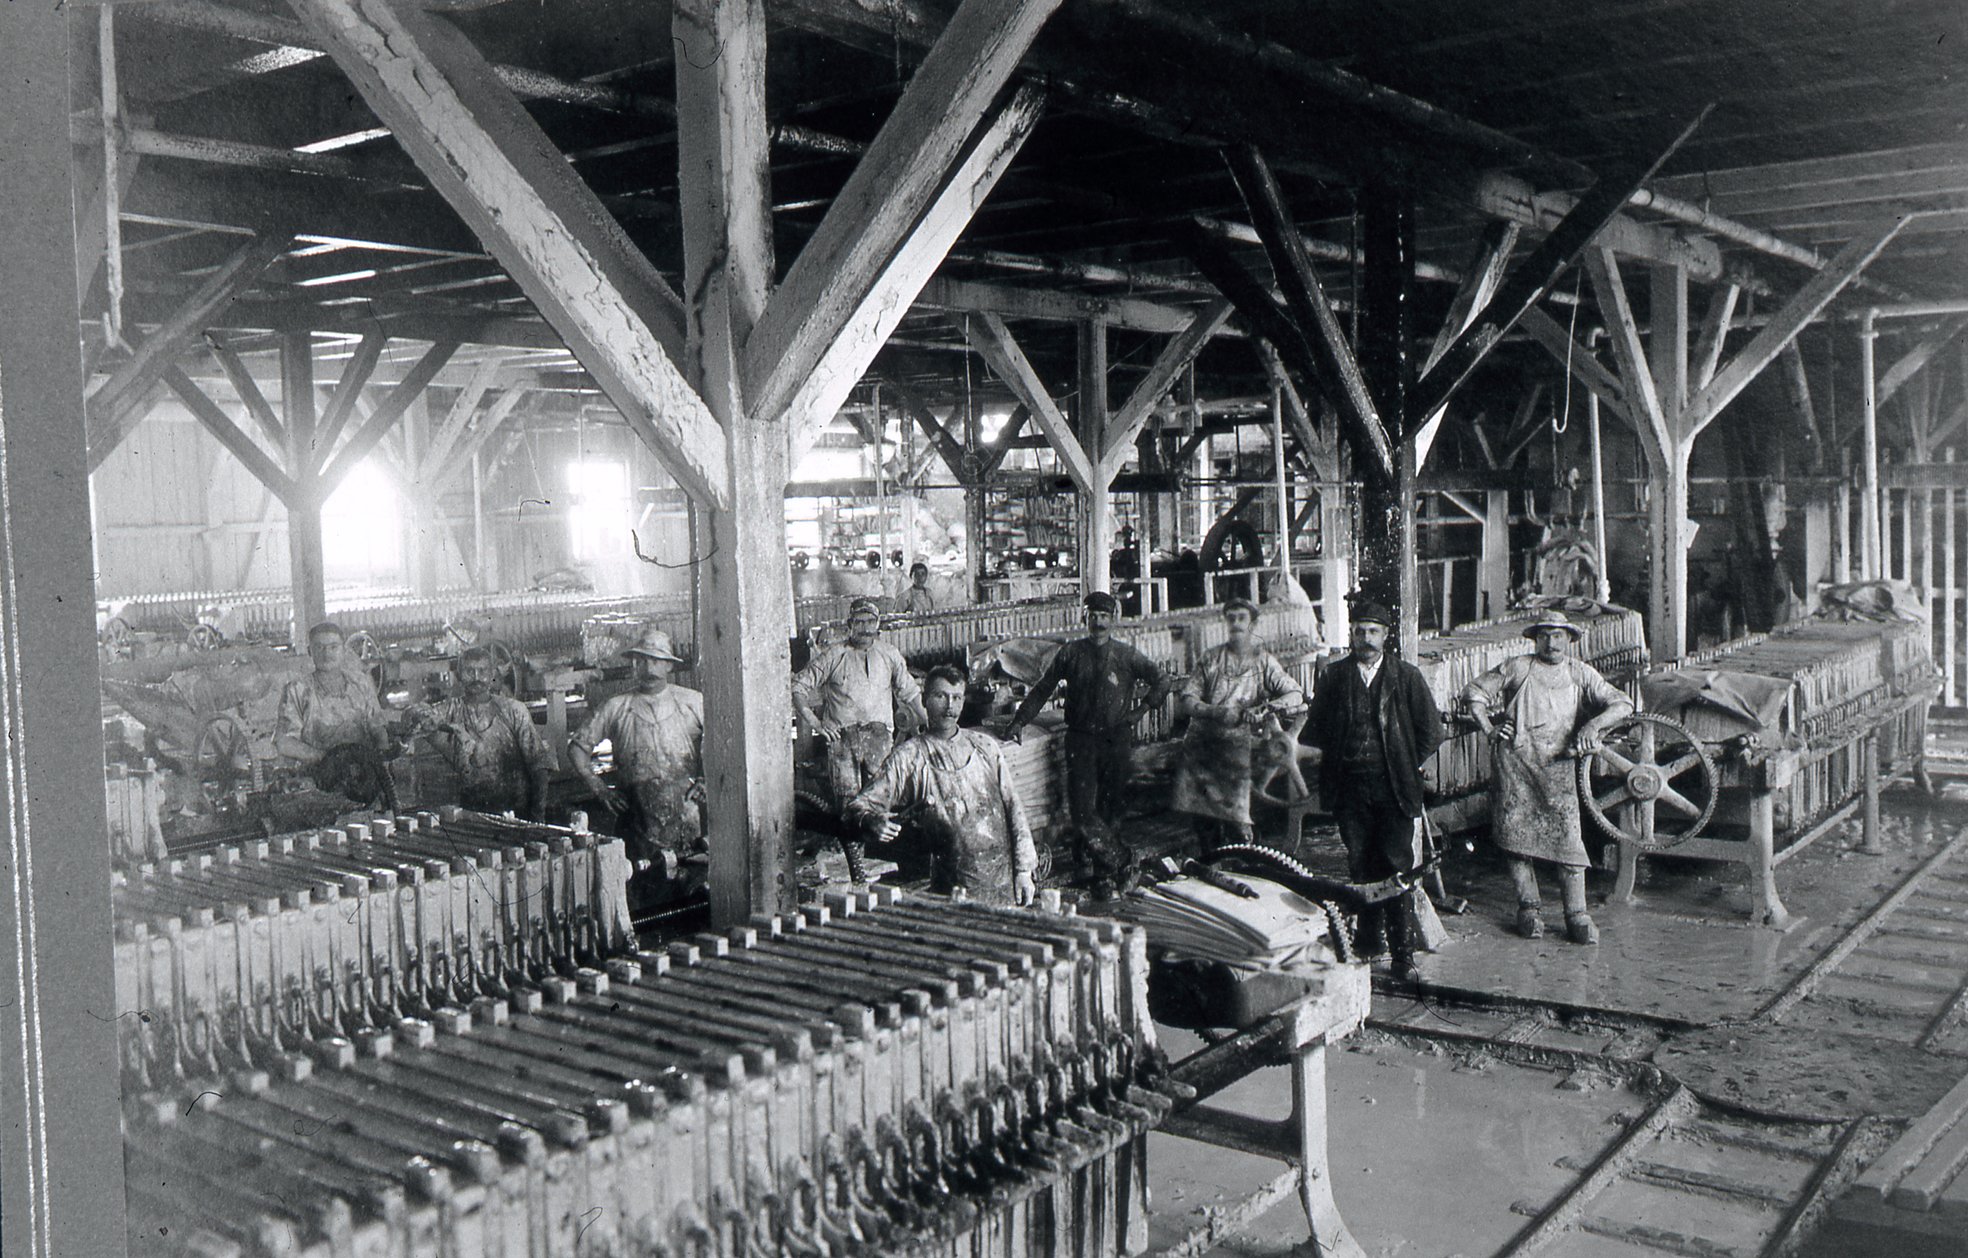 Fabrik Ifö Cementfabriks AB, AB Ifö Chamotte & Kaolinverk Slammeri 1904